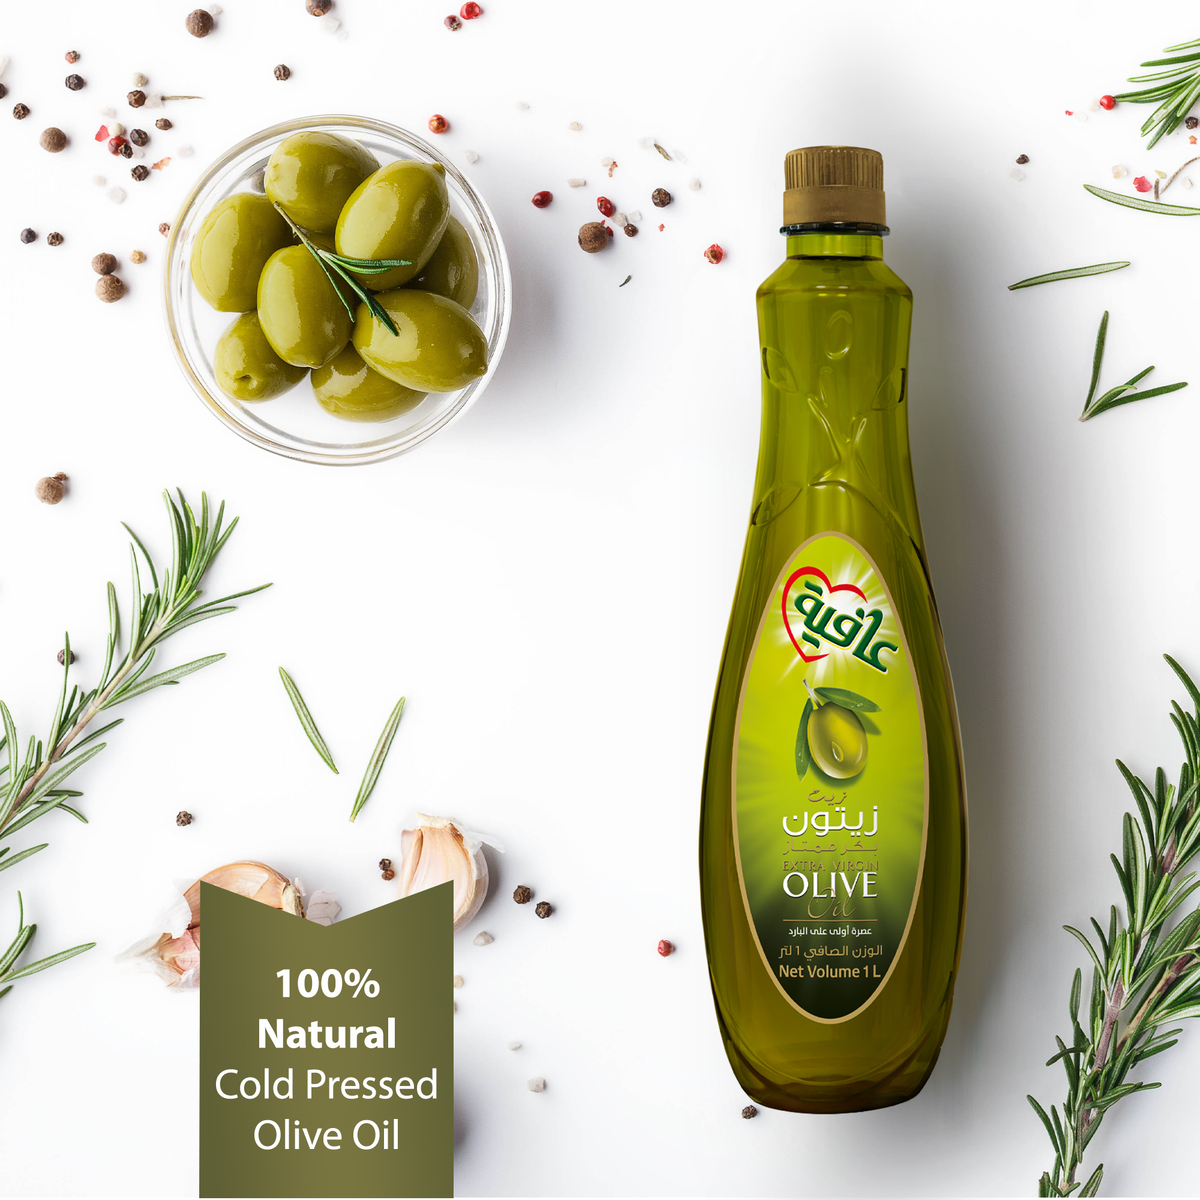 Afia Extra Virgin Olive Oil Cold Pressed 1 Litre